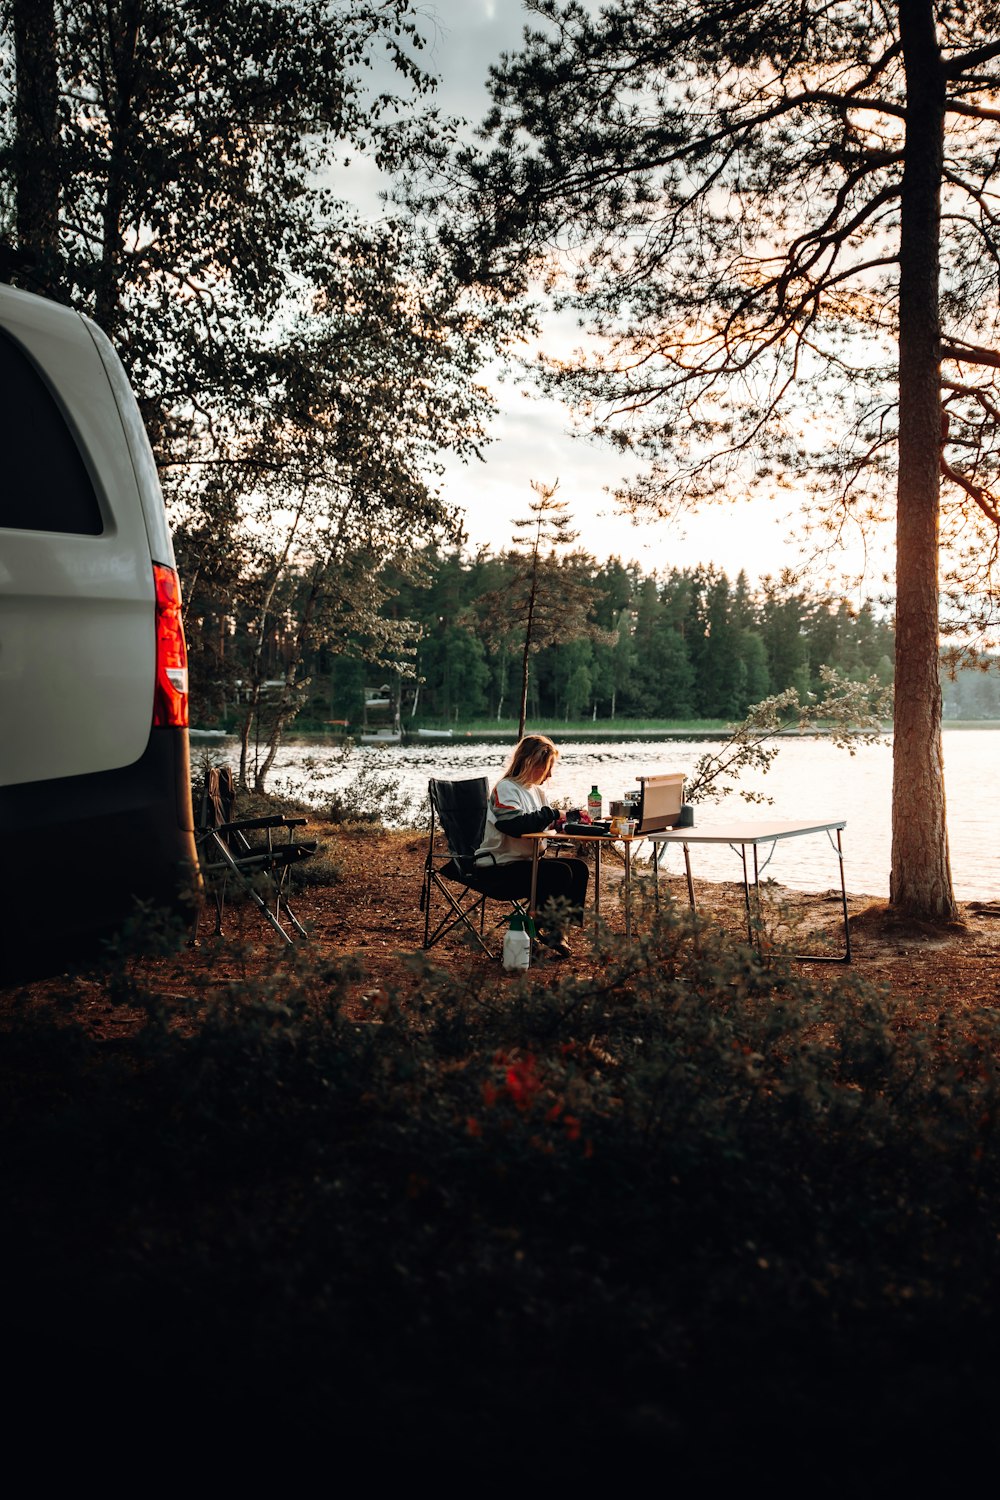 Una furgoneta estacionada junto a un lago con una persona sentada en una mesa